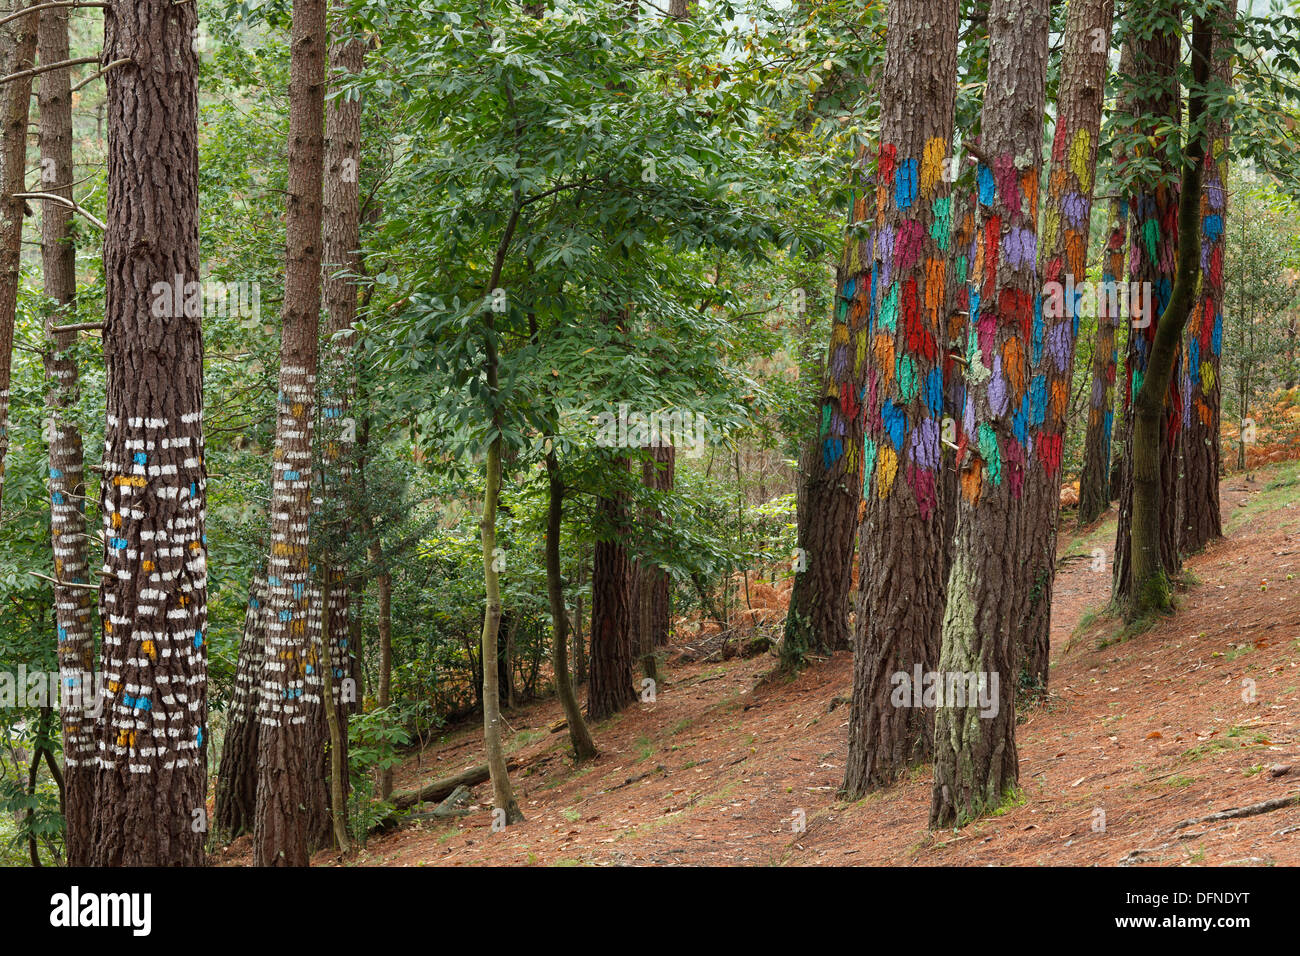 Painted trunks of trees, El bosque pintado de Oma, El bosque animado de Oma, Evocacion al mundo atomico del puntilismo, evocatio Stock Photo